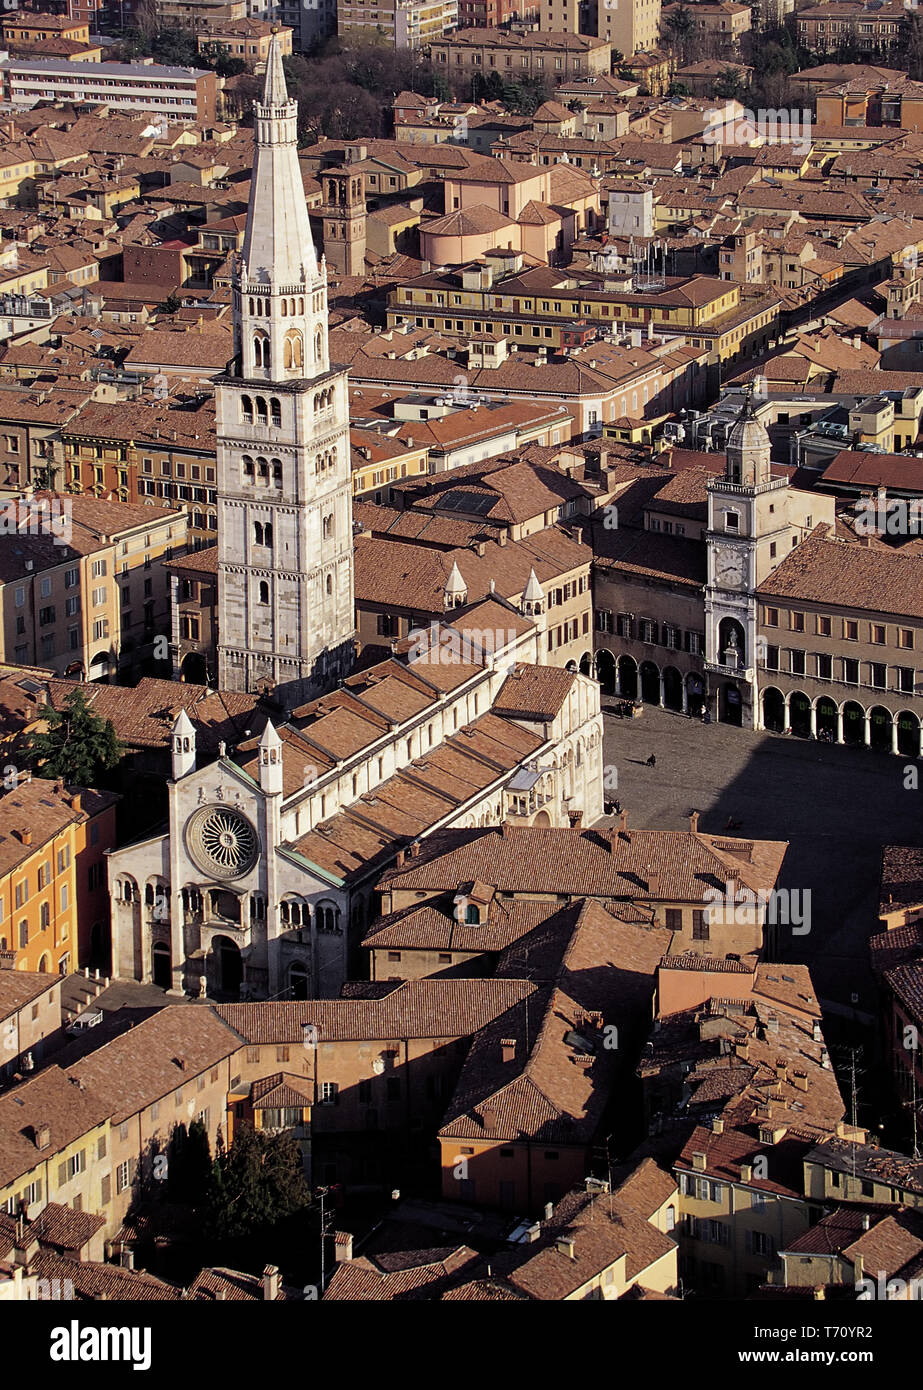 Modena: veduta aerea di Piazza Grande con il Duomo, la Ghirlandina (la torre campanaria) e il Municipio con la Torre civica.  [ENG] Modena: aerial vie Stock Photo